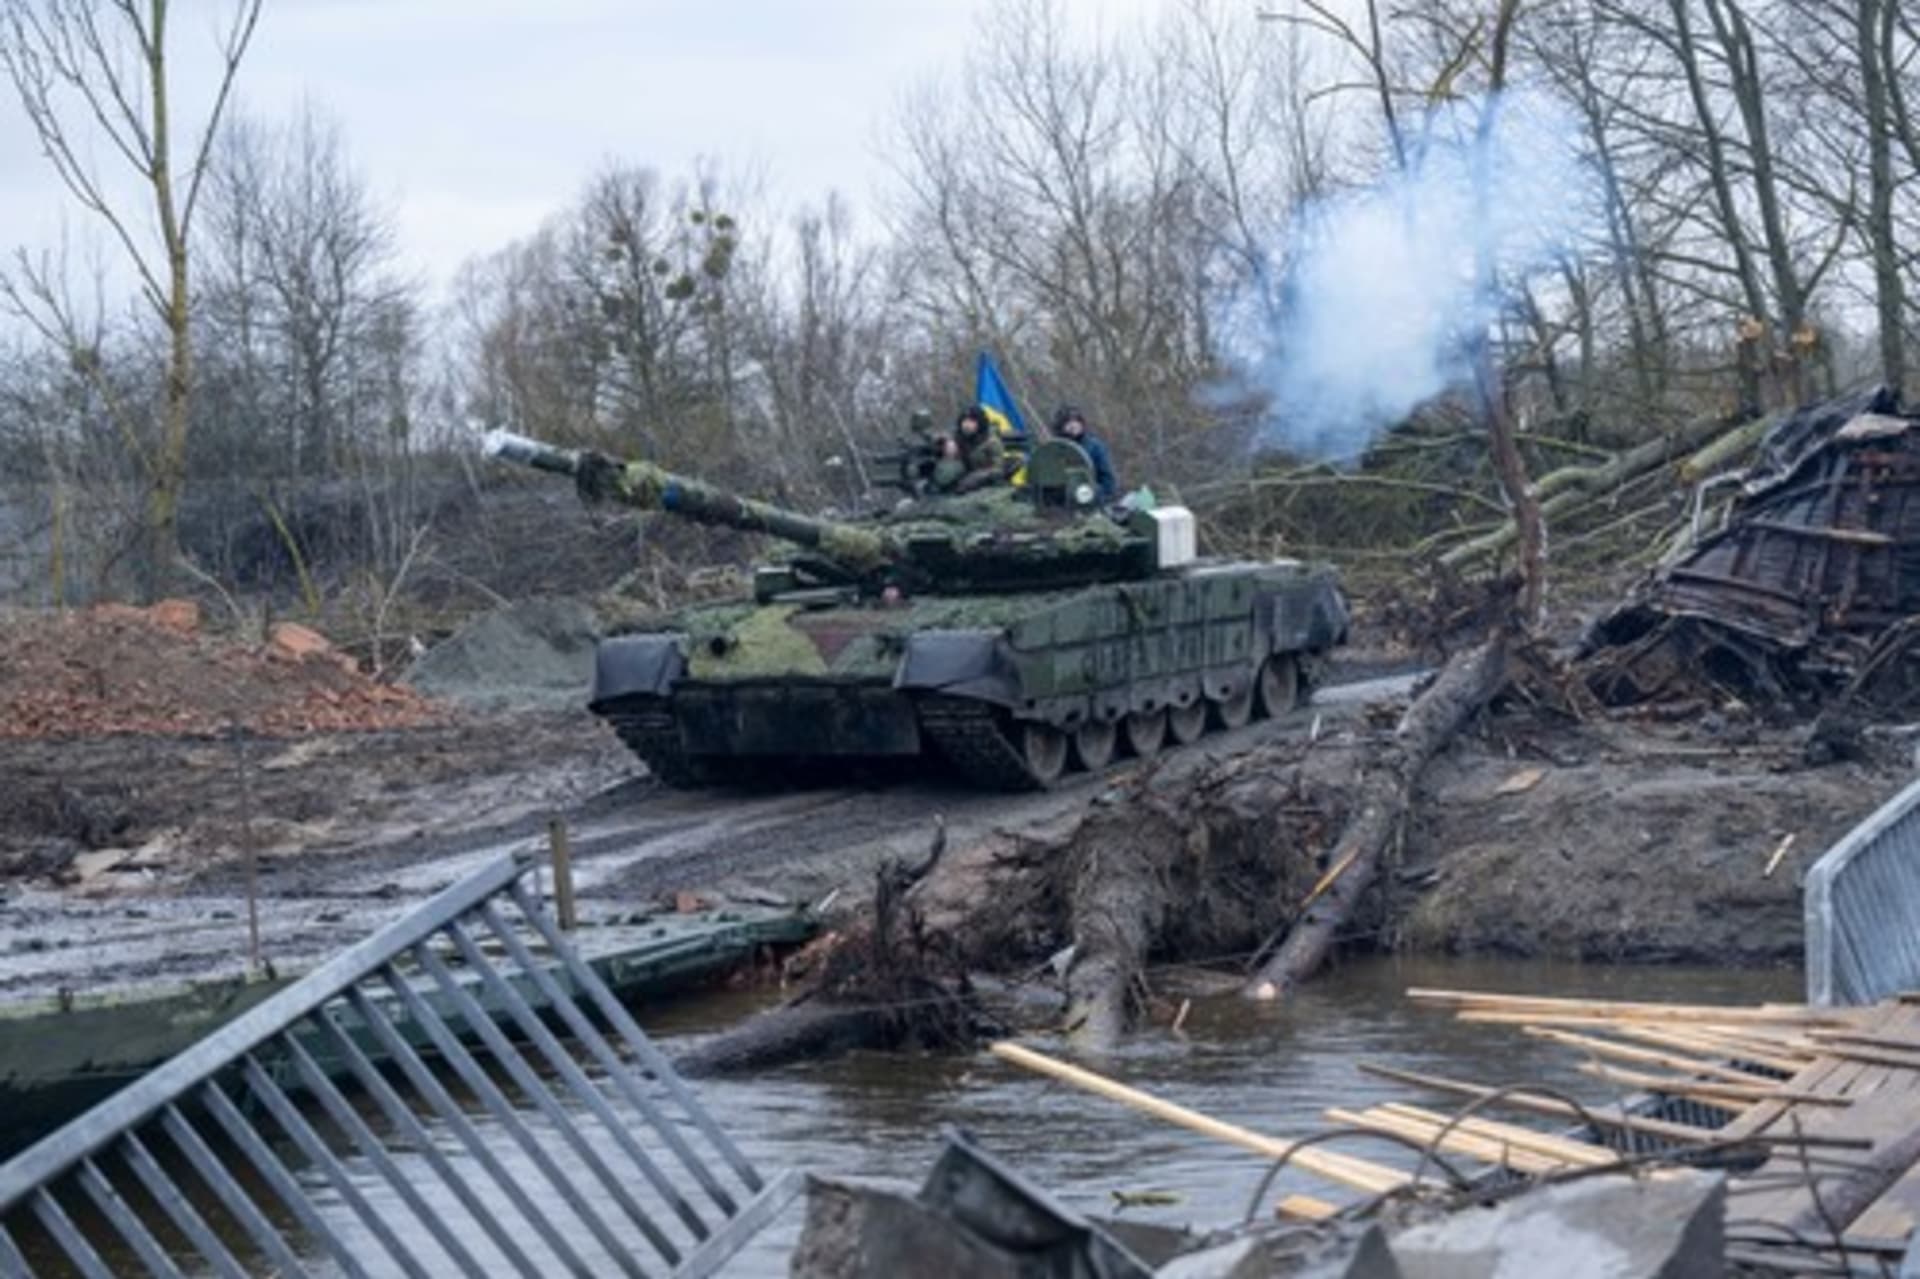 Ukrajinský tank jedoucí po pontonovém mostě